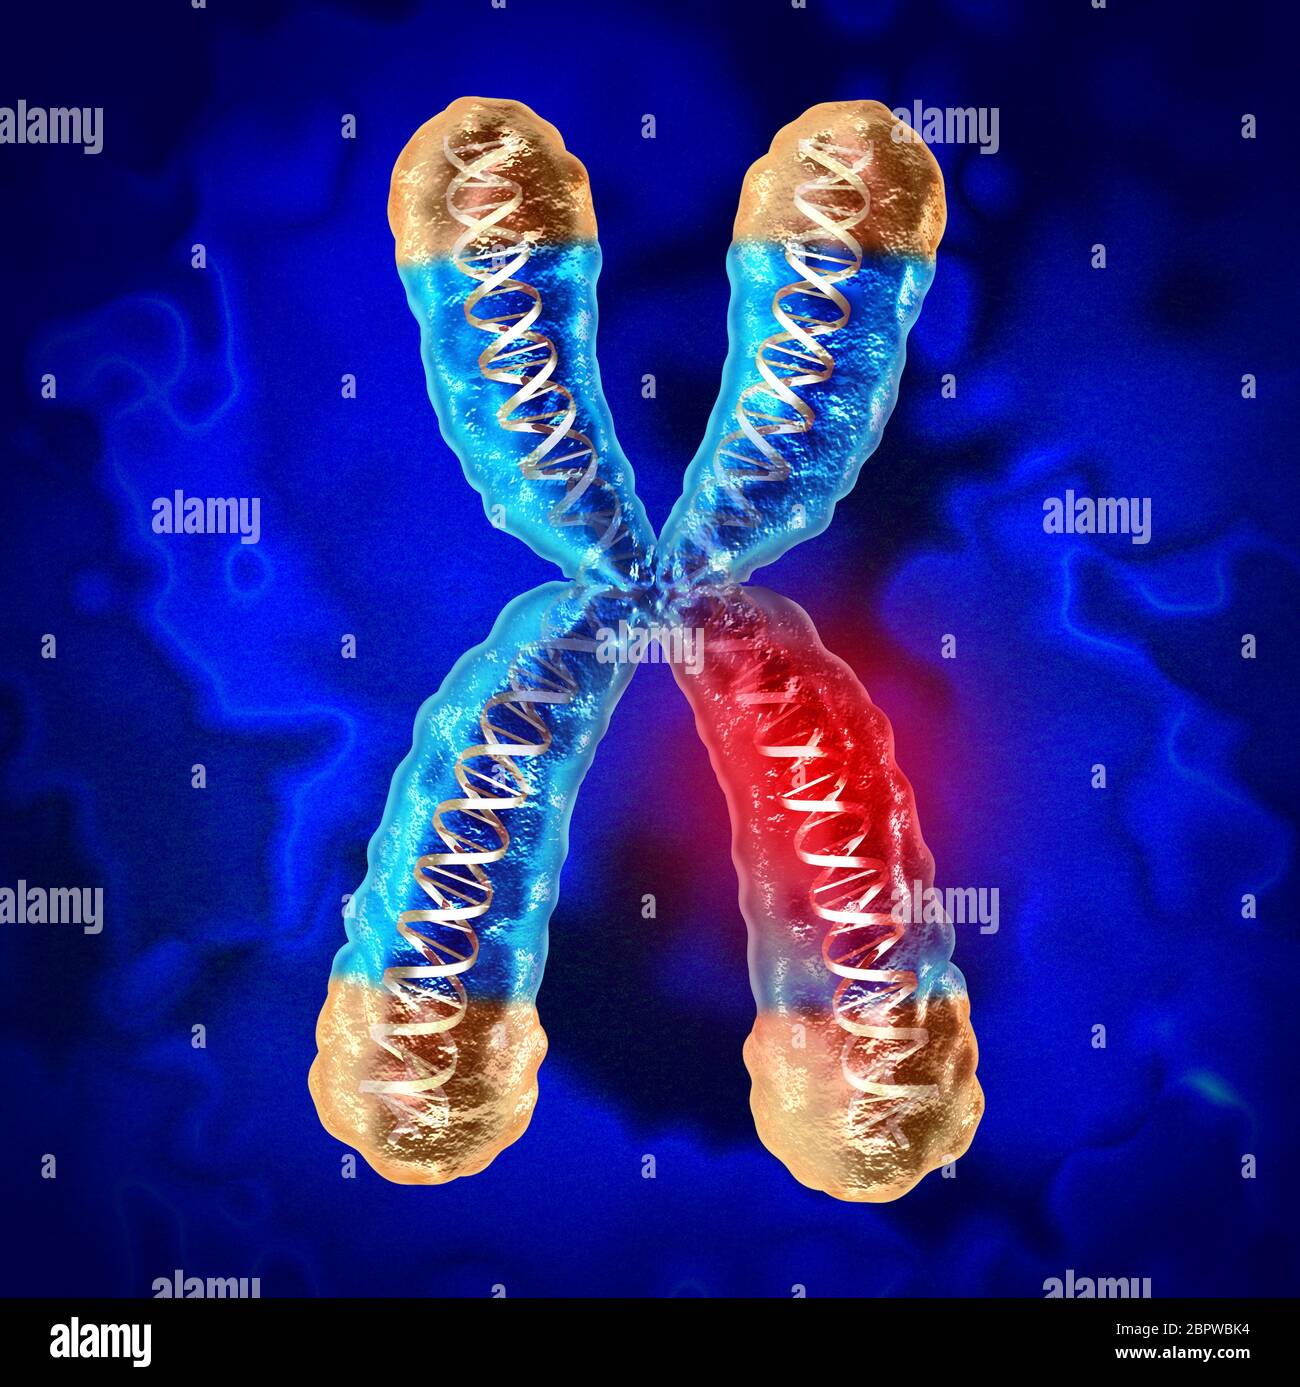 Malattie genetiche e malattie cromosomiche o danni al DNA come concetto scientifico e biologico con geni danneggiati come rendering 3D.[ Foto Stock